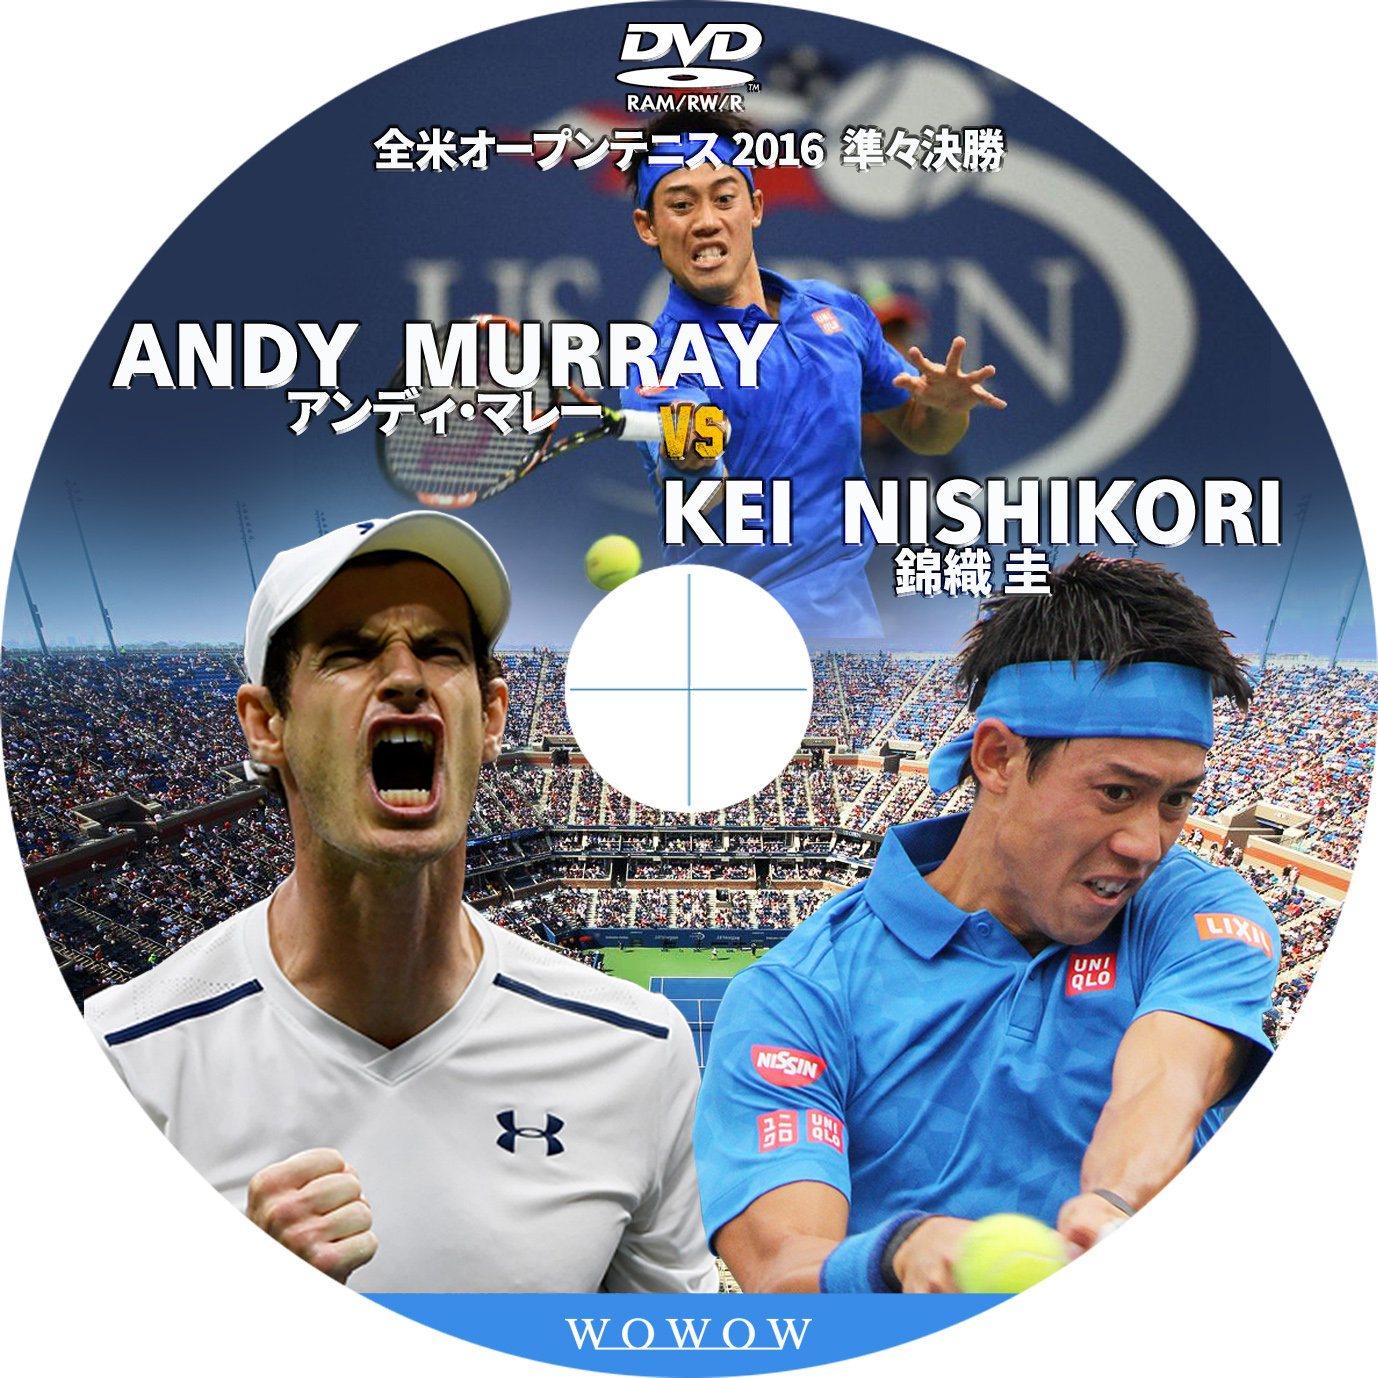 全米オープンテニス 16 準々決勝 錦織圭 Vs アンディマレー Tomiio15音楽ライブdvd Blu Rayラベル